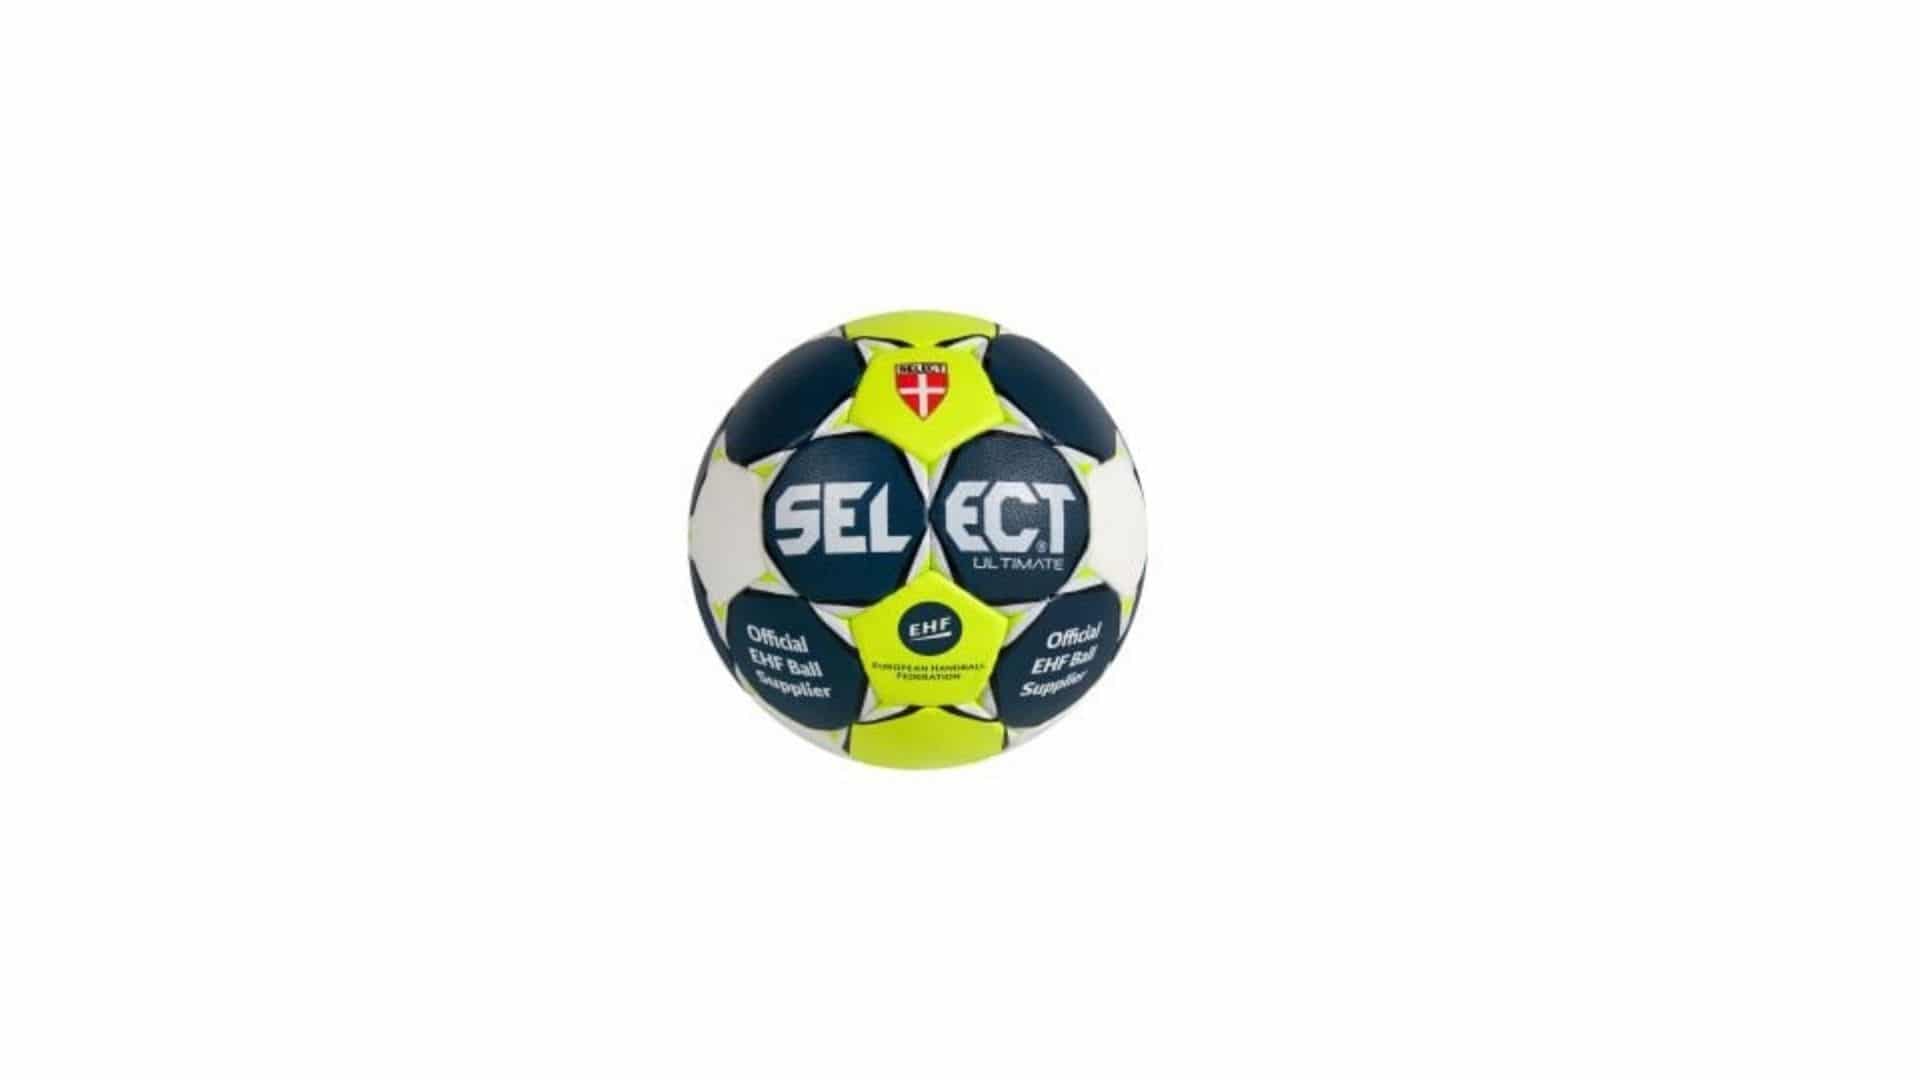 Select Handball Advance 